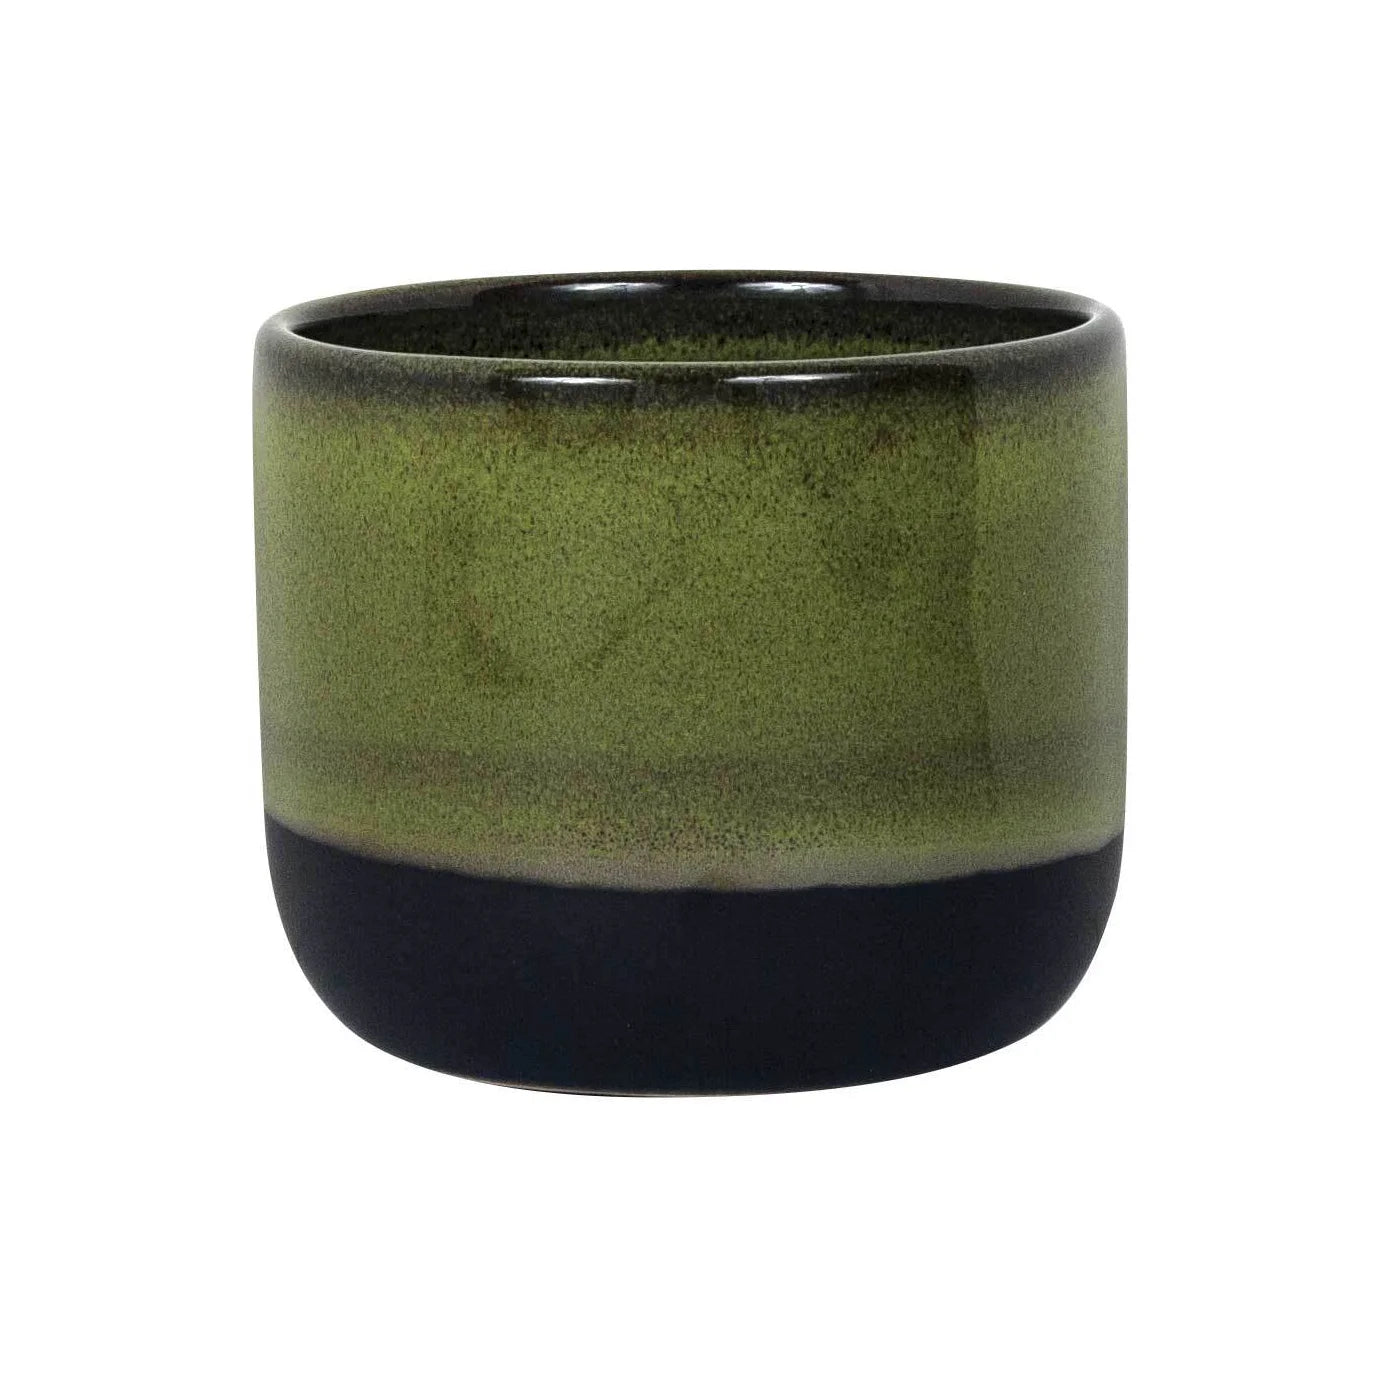 Green and Black Glazed Ceramic Pot